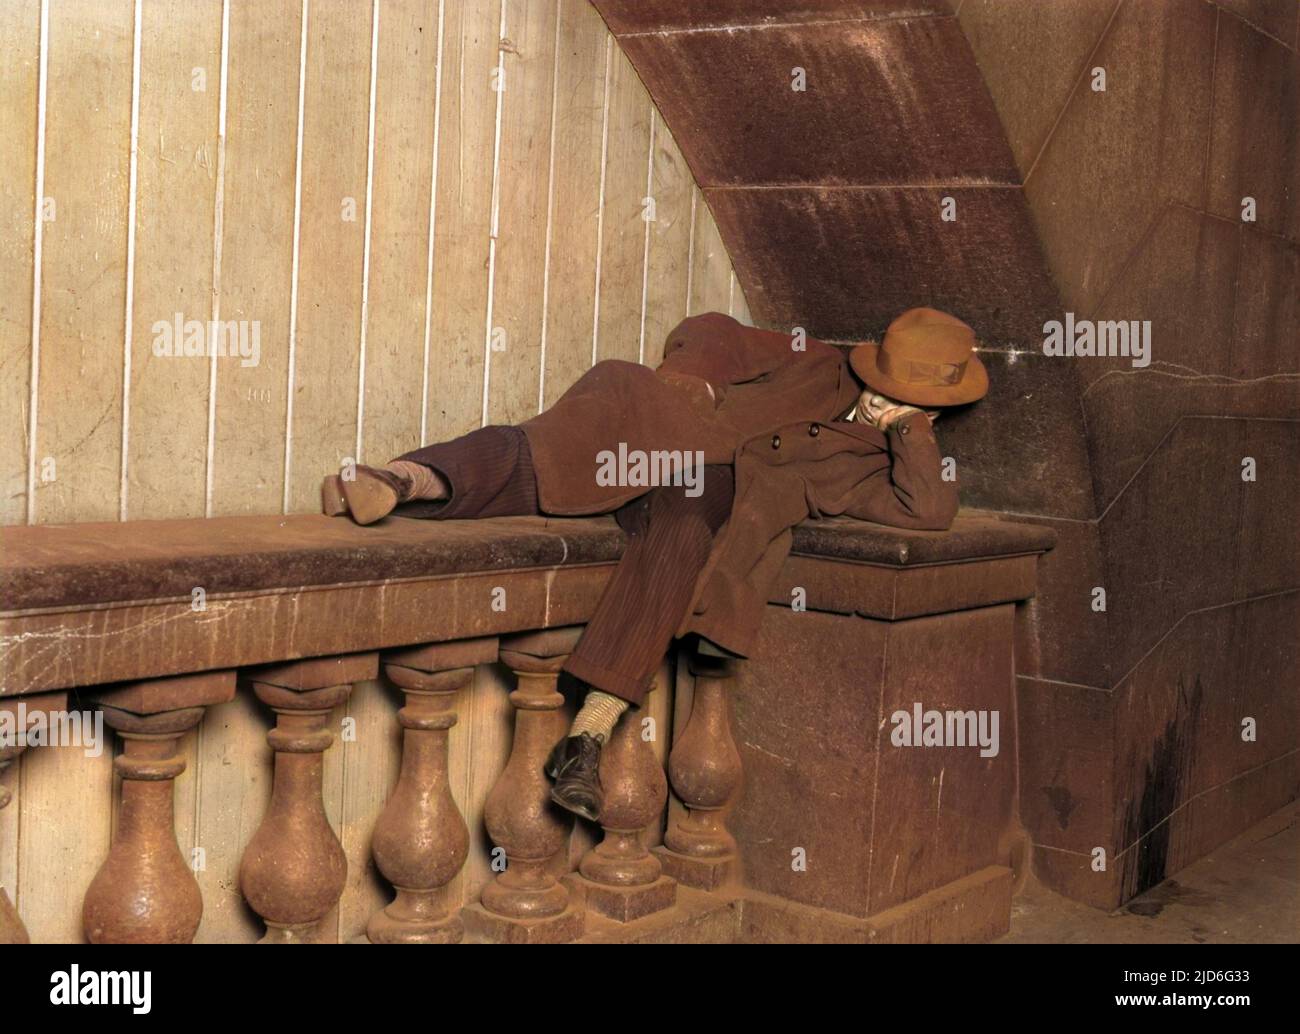 Ein Landstreicher (oder einfach nur ein obdachloser junger Mann), der auf dem Embankment, London, England, hart schläft. Kolorierte Version von : 10168261 Datum: Anfang 1930s Stockfoto